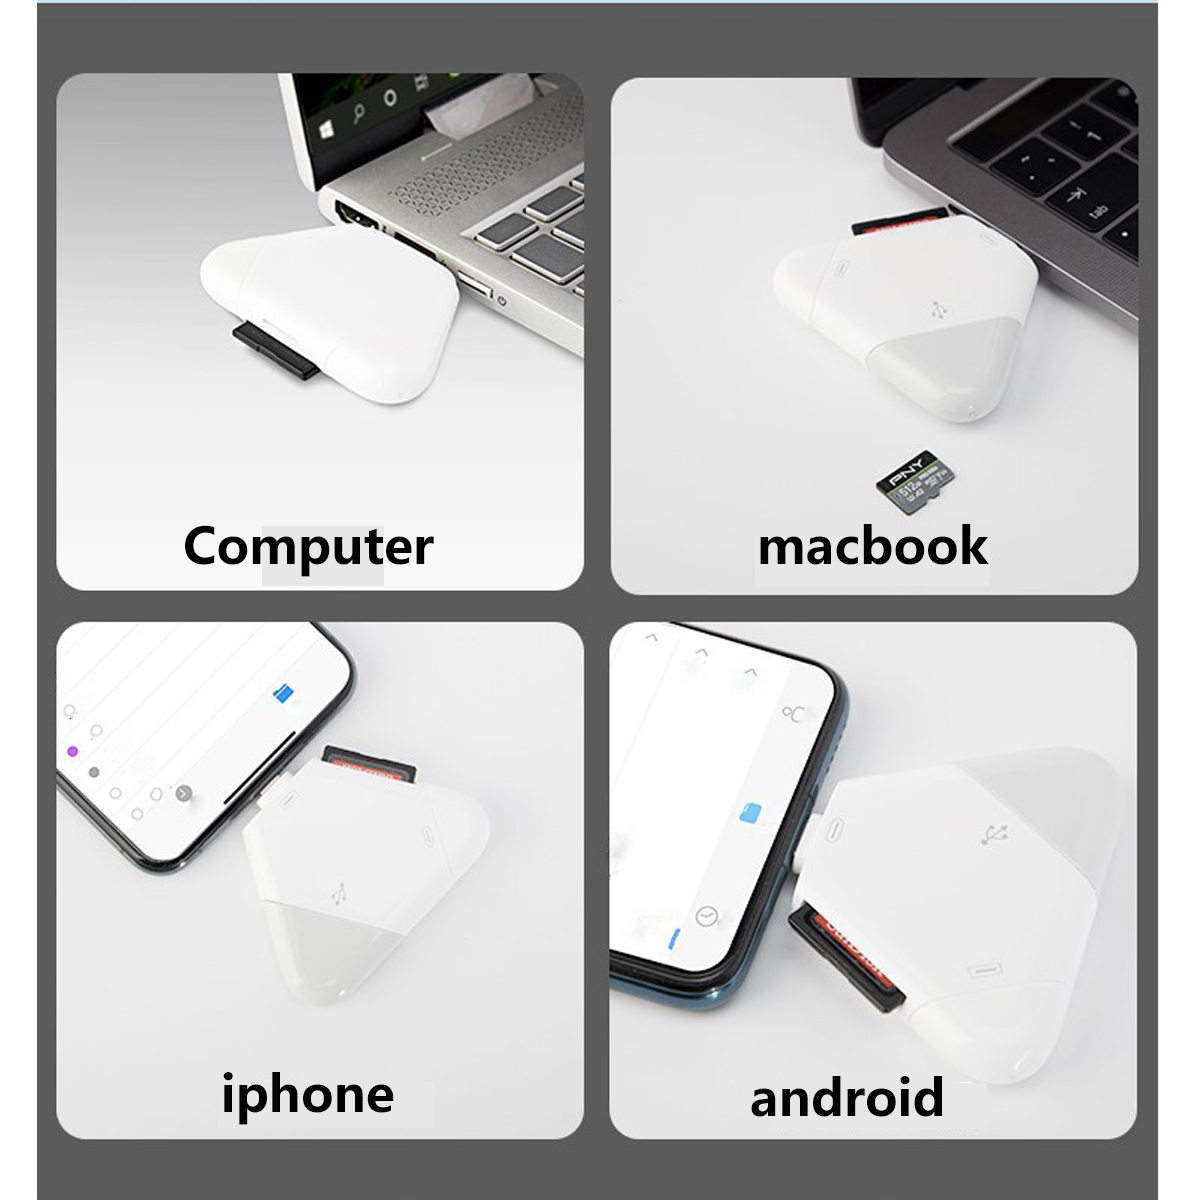 SYNTEK Kartenleser Magnetkartenleser für Apple SD/TF Kartenleser Android Tablet Mobiltelefon/Type-C/USB OTG Computer